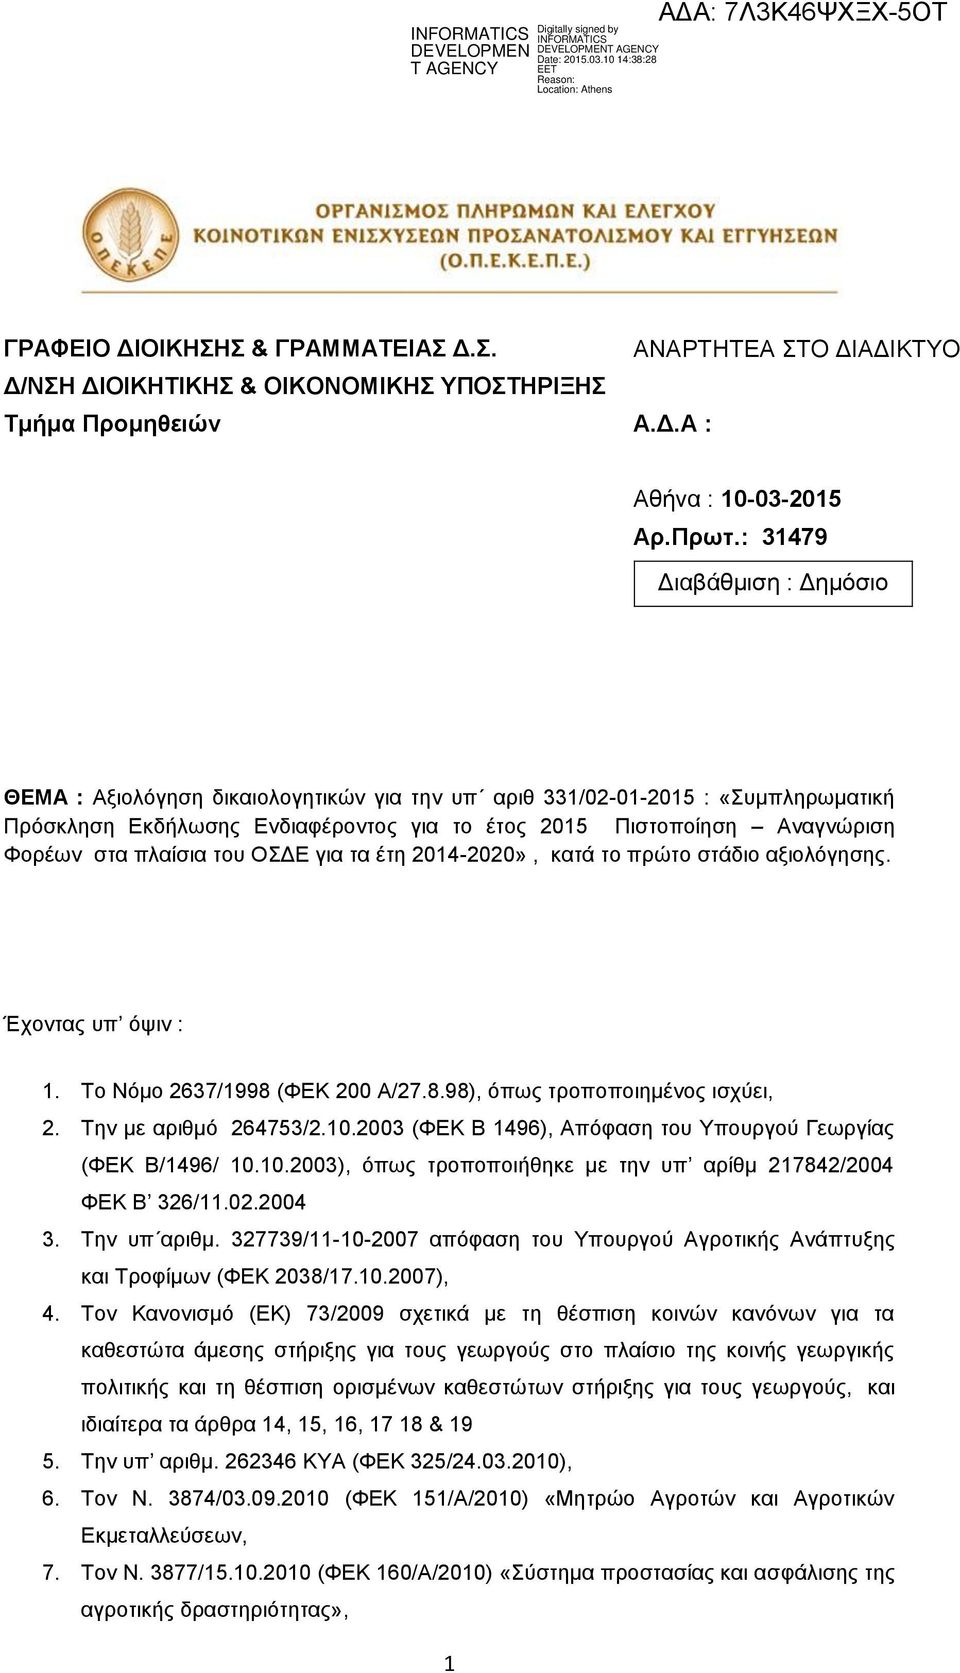 Έχοντας υπ όψιν : 1. Το Νόμο 2637/1998 (ΦΕΚ 200 /27.8.98), όπως τροποποιημένος ισχύει, 2. Την με αριθμό 264753/2.10.2003 (ΦΕΚ Β 1496), πόφαση του Υπουργού Γεωργίας (ΦΕΚ Β/1496/ 10.10.2003), όπως τροποποιήθηκε με την υπ αρίθμ 217842/2004 ΦΕΚ Β 326/11.